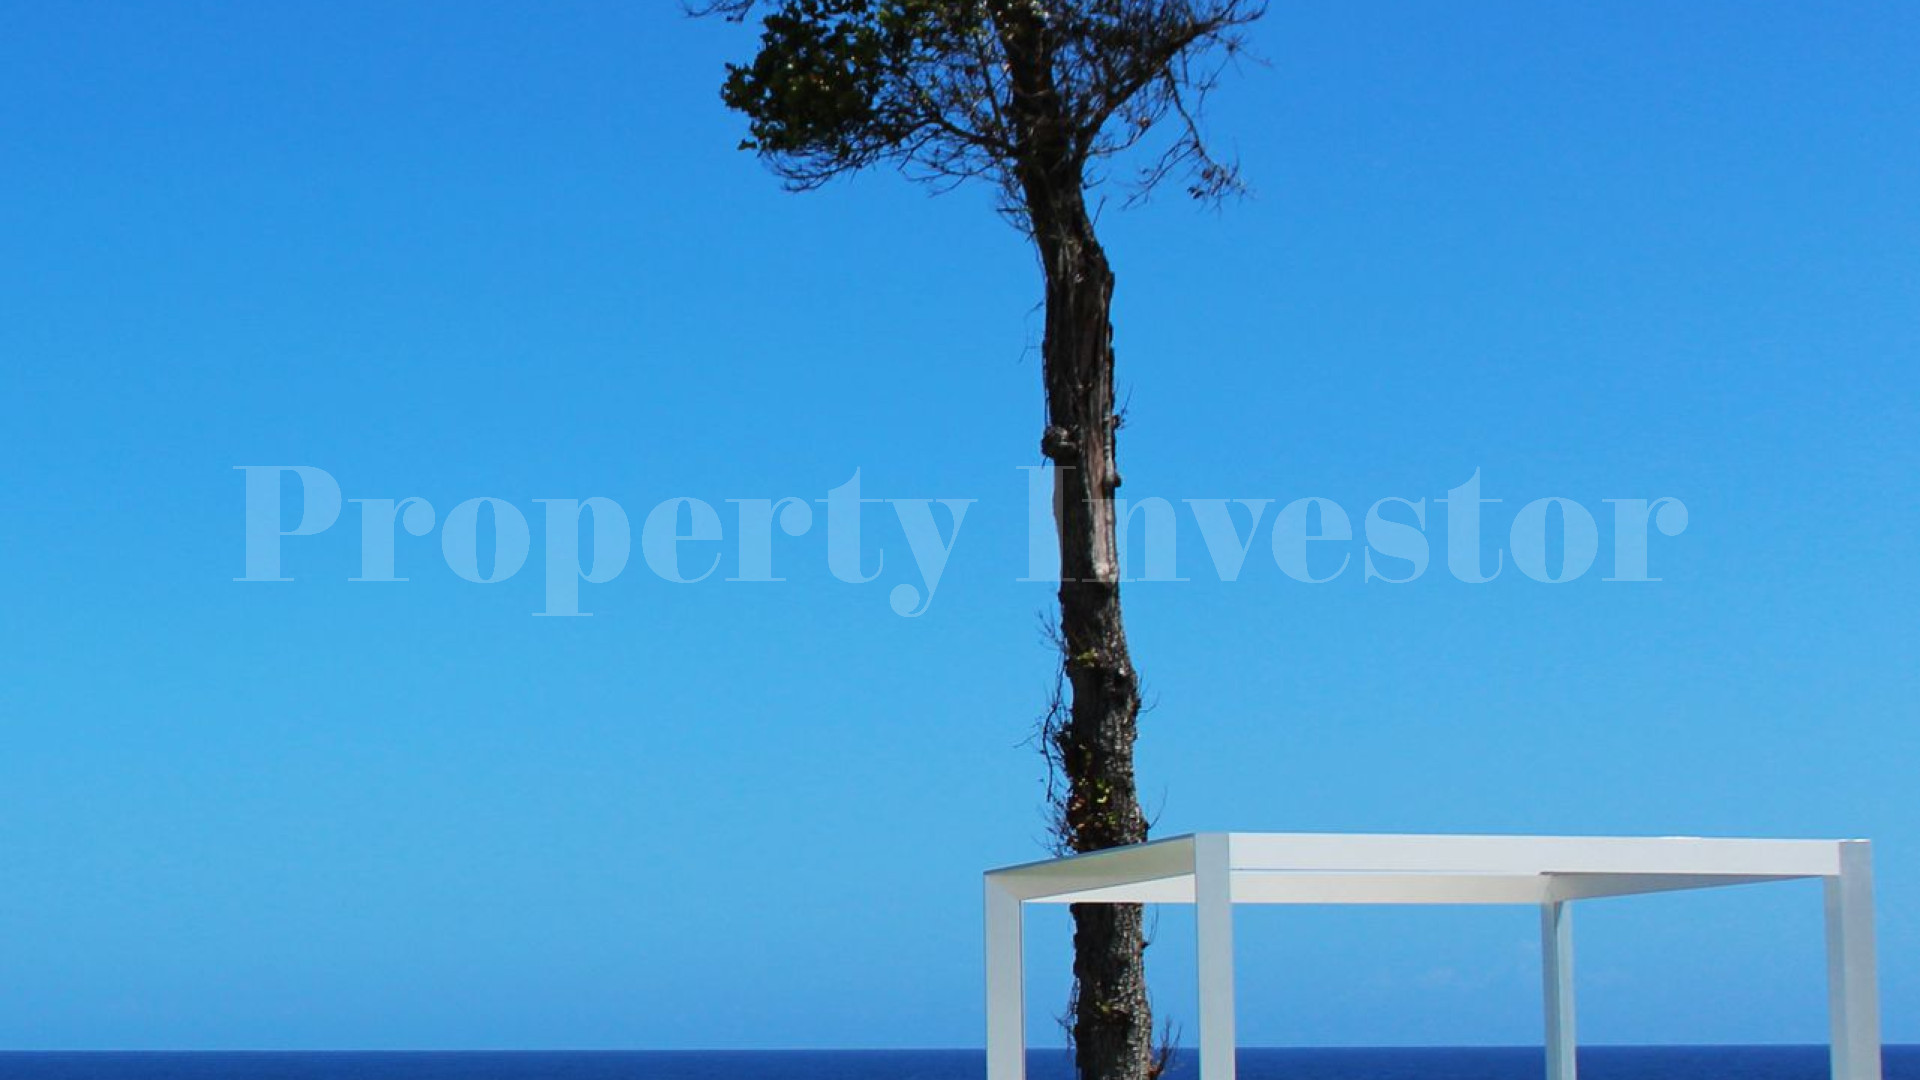 Участок в собственность в Доминиканской Республике с финансированием до 10 лет (Lot 43)